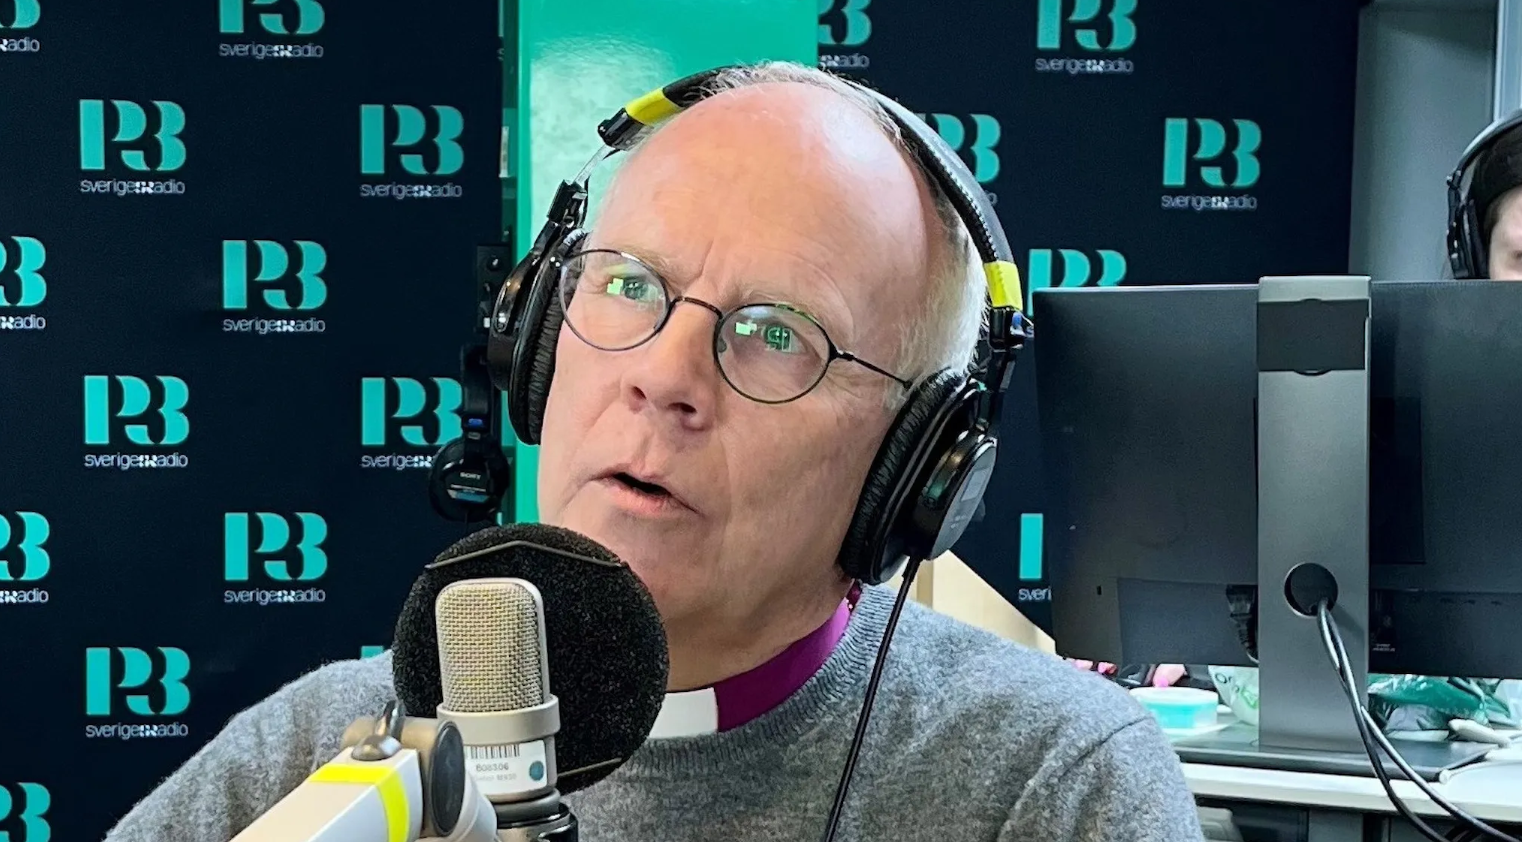 Ärkebiskop Martin Modéus sitter i en studio och pratar i en radiomick.